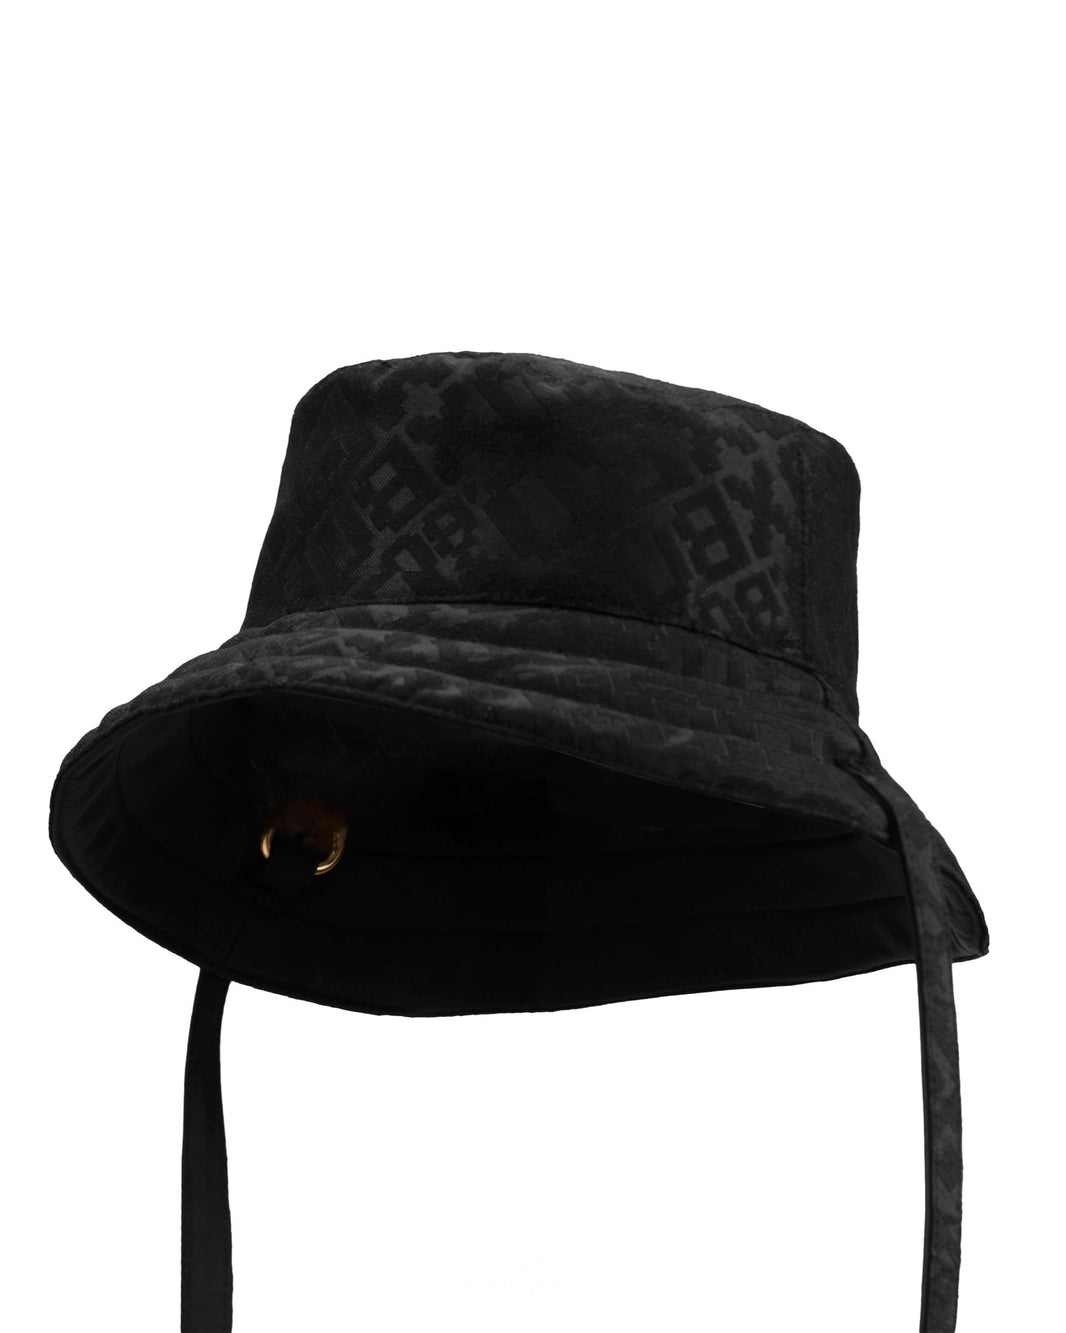 Bucket Hats & Caps by GALXBOY Wide Range of Streetwear